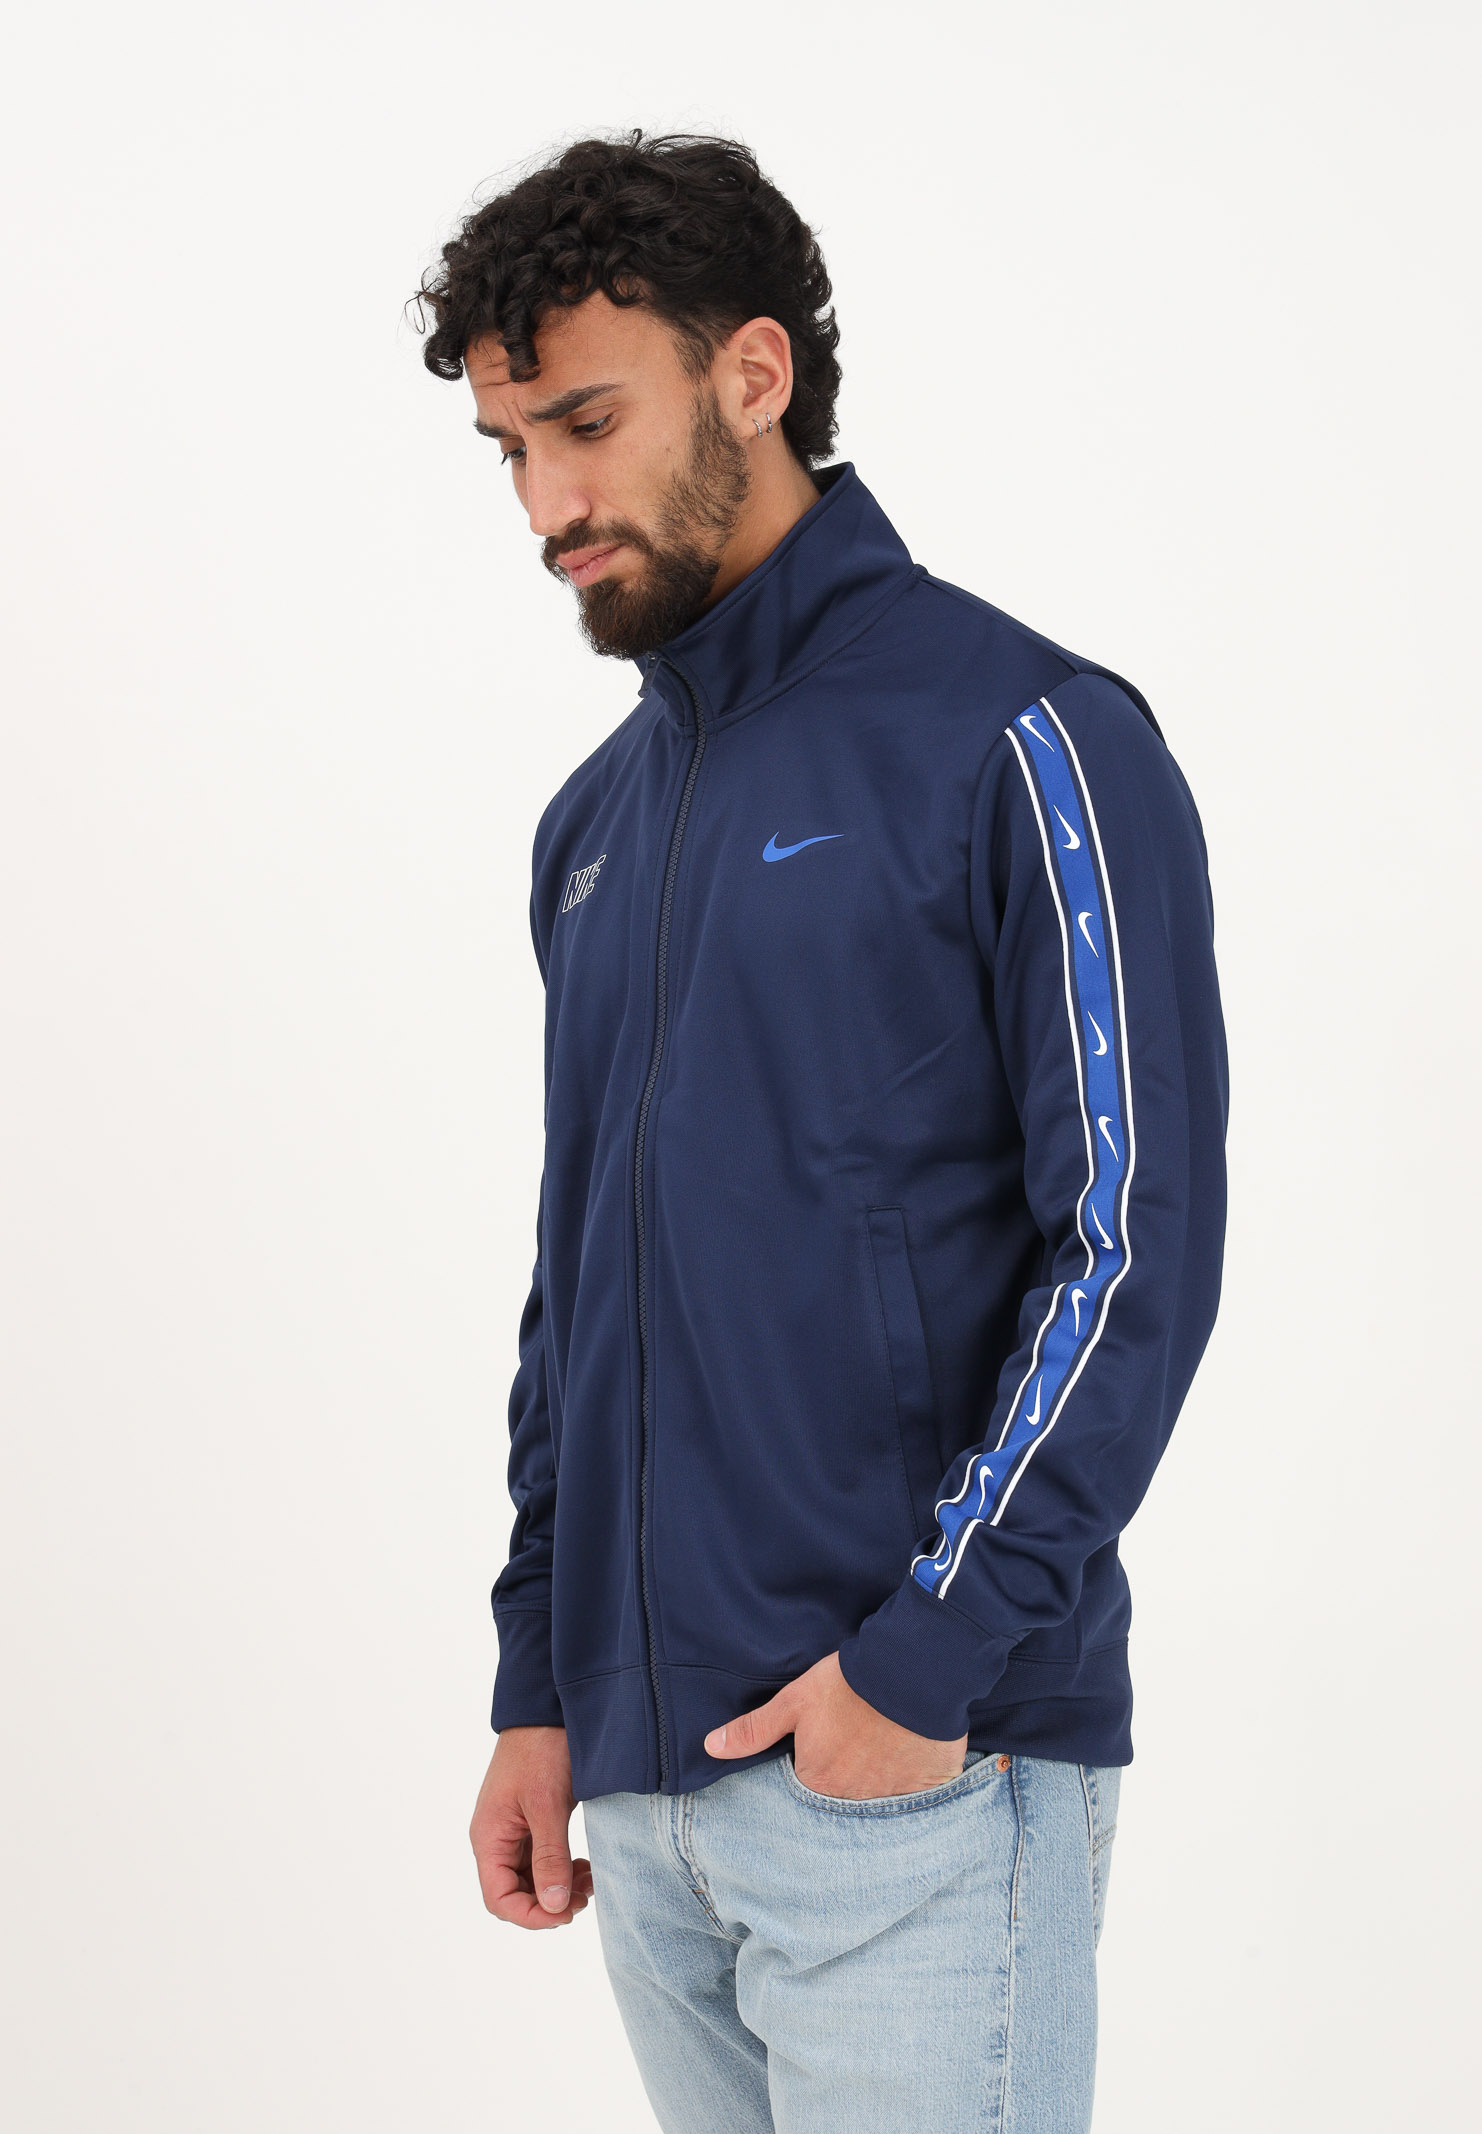 Nike Sportswear Repeat Men's Blue Zip Up Sweatshirt NIKE | FD1183410